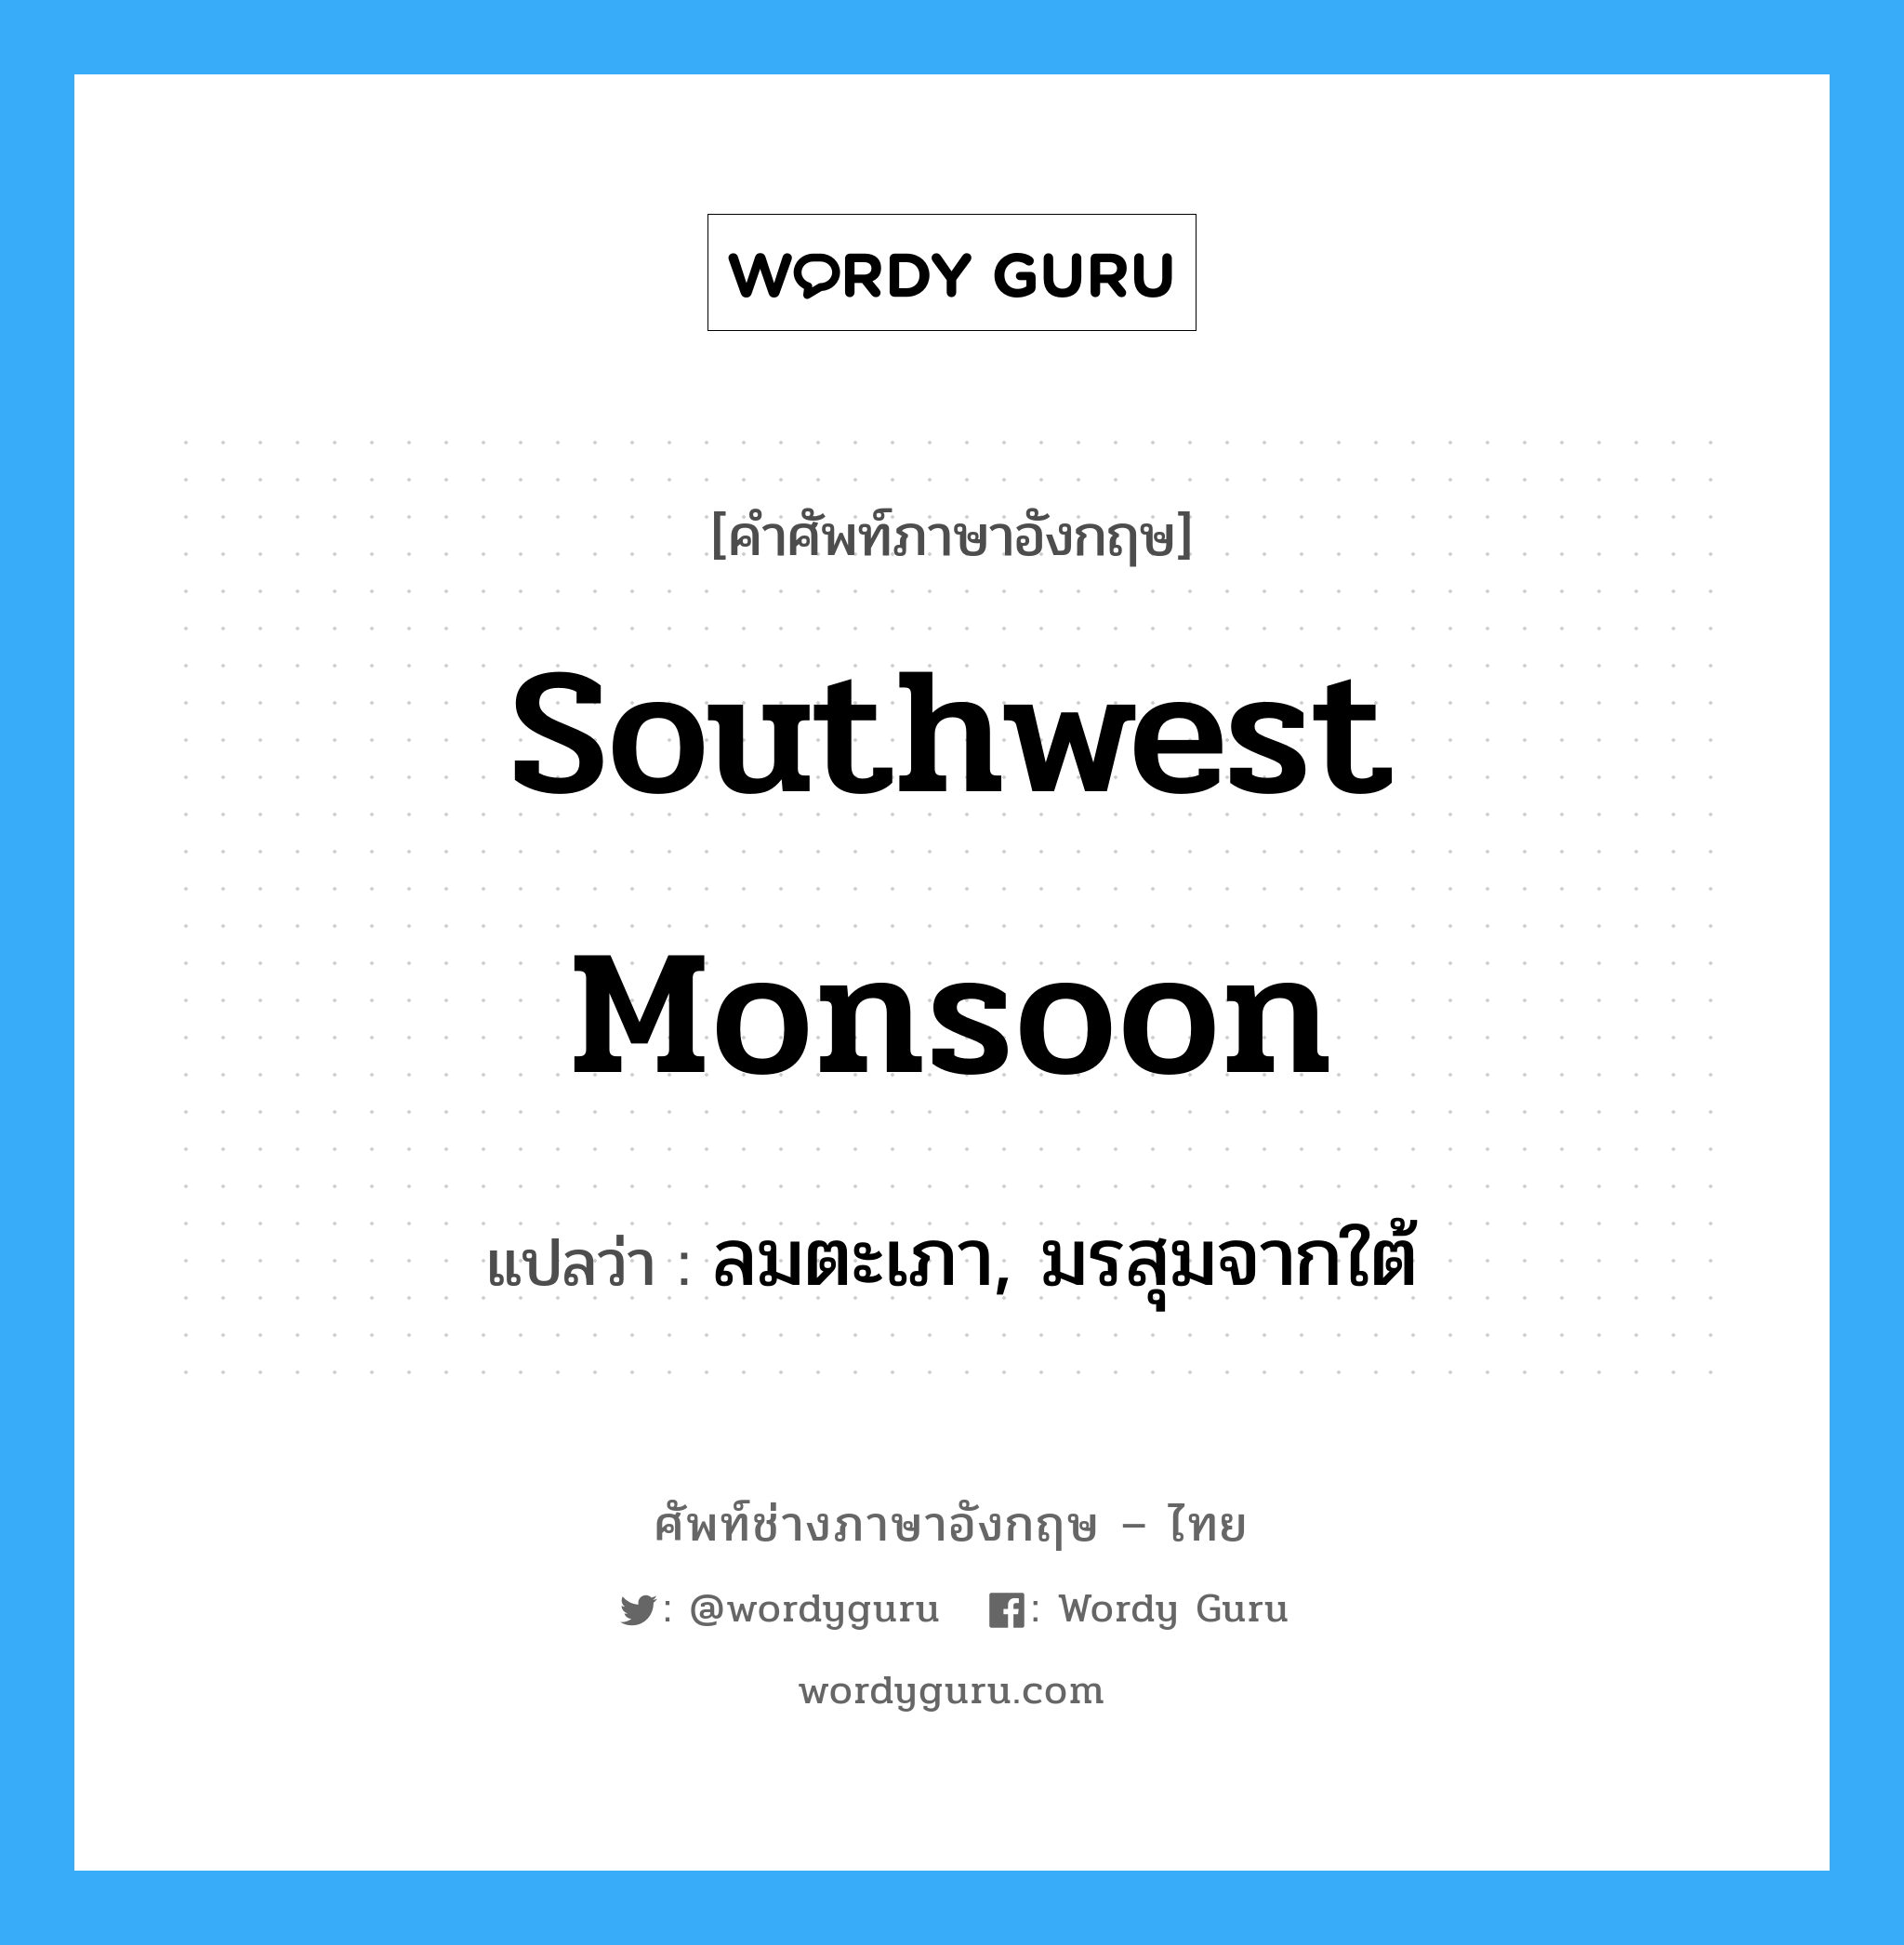 ลมตะเภา, มรสุมจากใต้ ภาษาอังกฤษ?, คำศัพท์ช่างภาษาอังกฤษ - ไทย ลมตะเภา, มรสุมจากใต้ คำศัพท์ภาษาอังกฤษ ลมตะเภา, มรสุมจากใต้ แปลว่า southwest monsoon